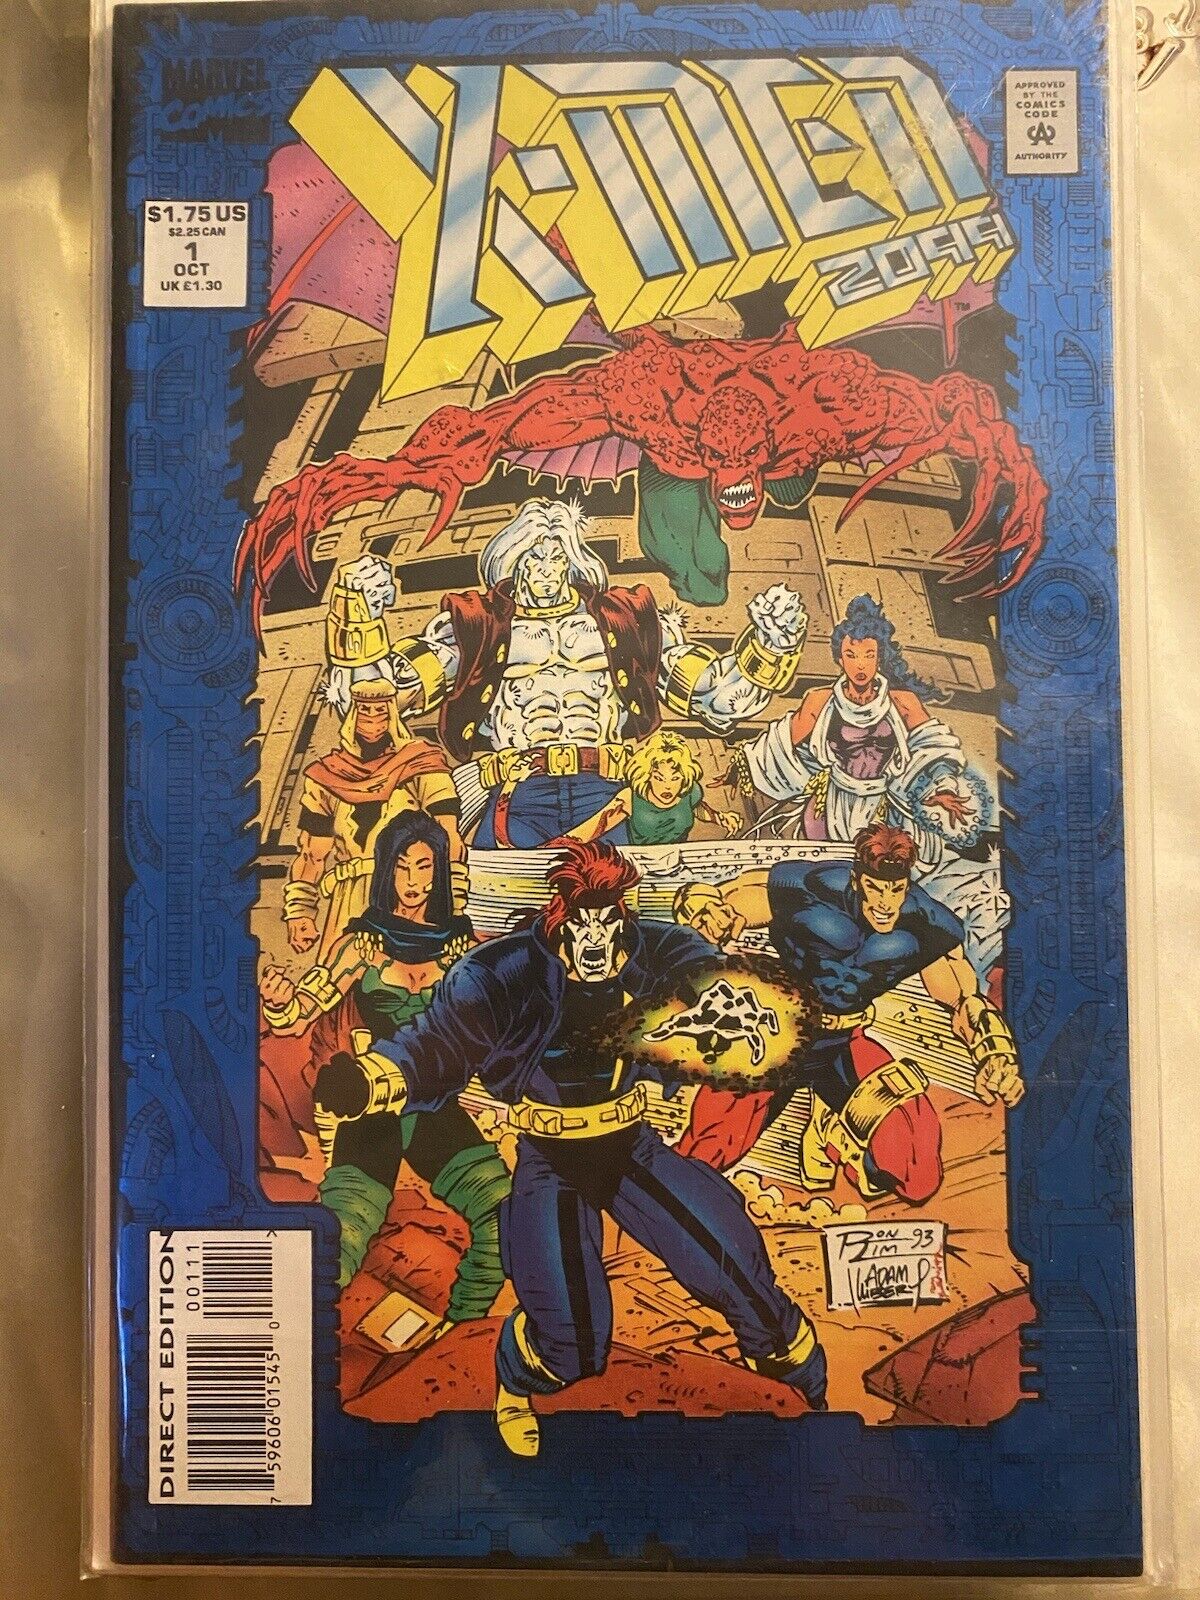 X-Men 2099 #1 1993 Marvel Comics NM Blue Foil Cover 1st Appearance X-Men 2099